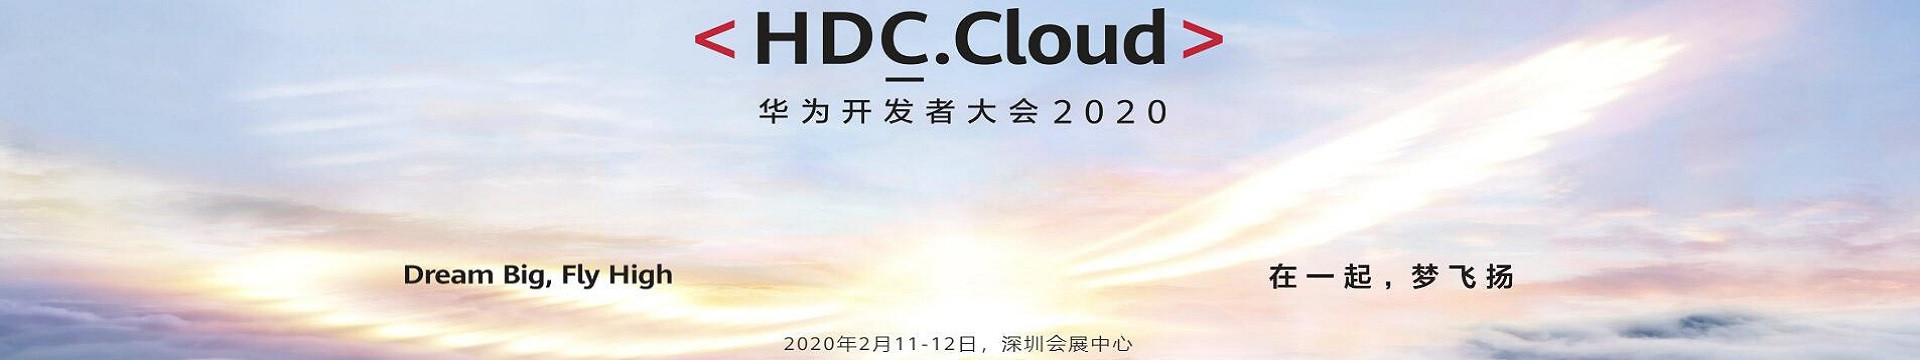 2020华为开发者大会HDC.Cloud